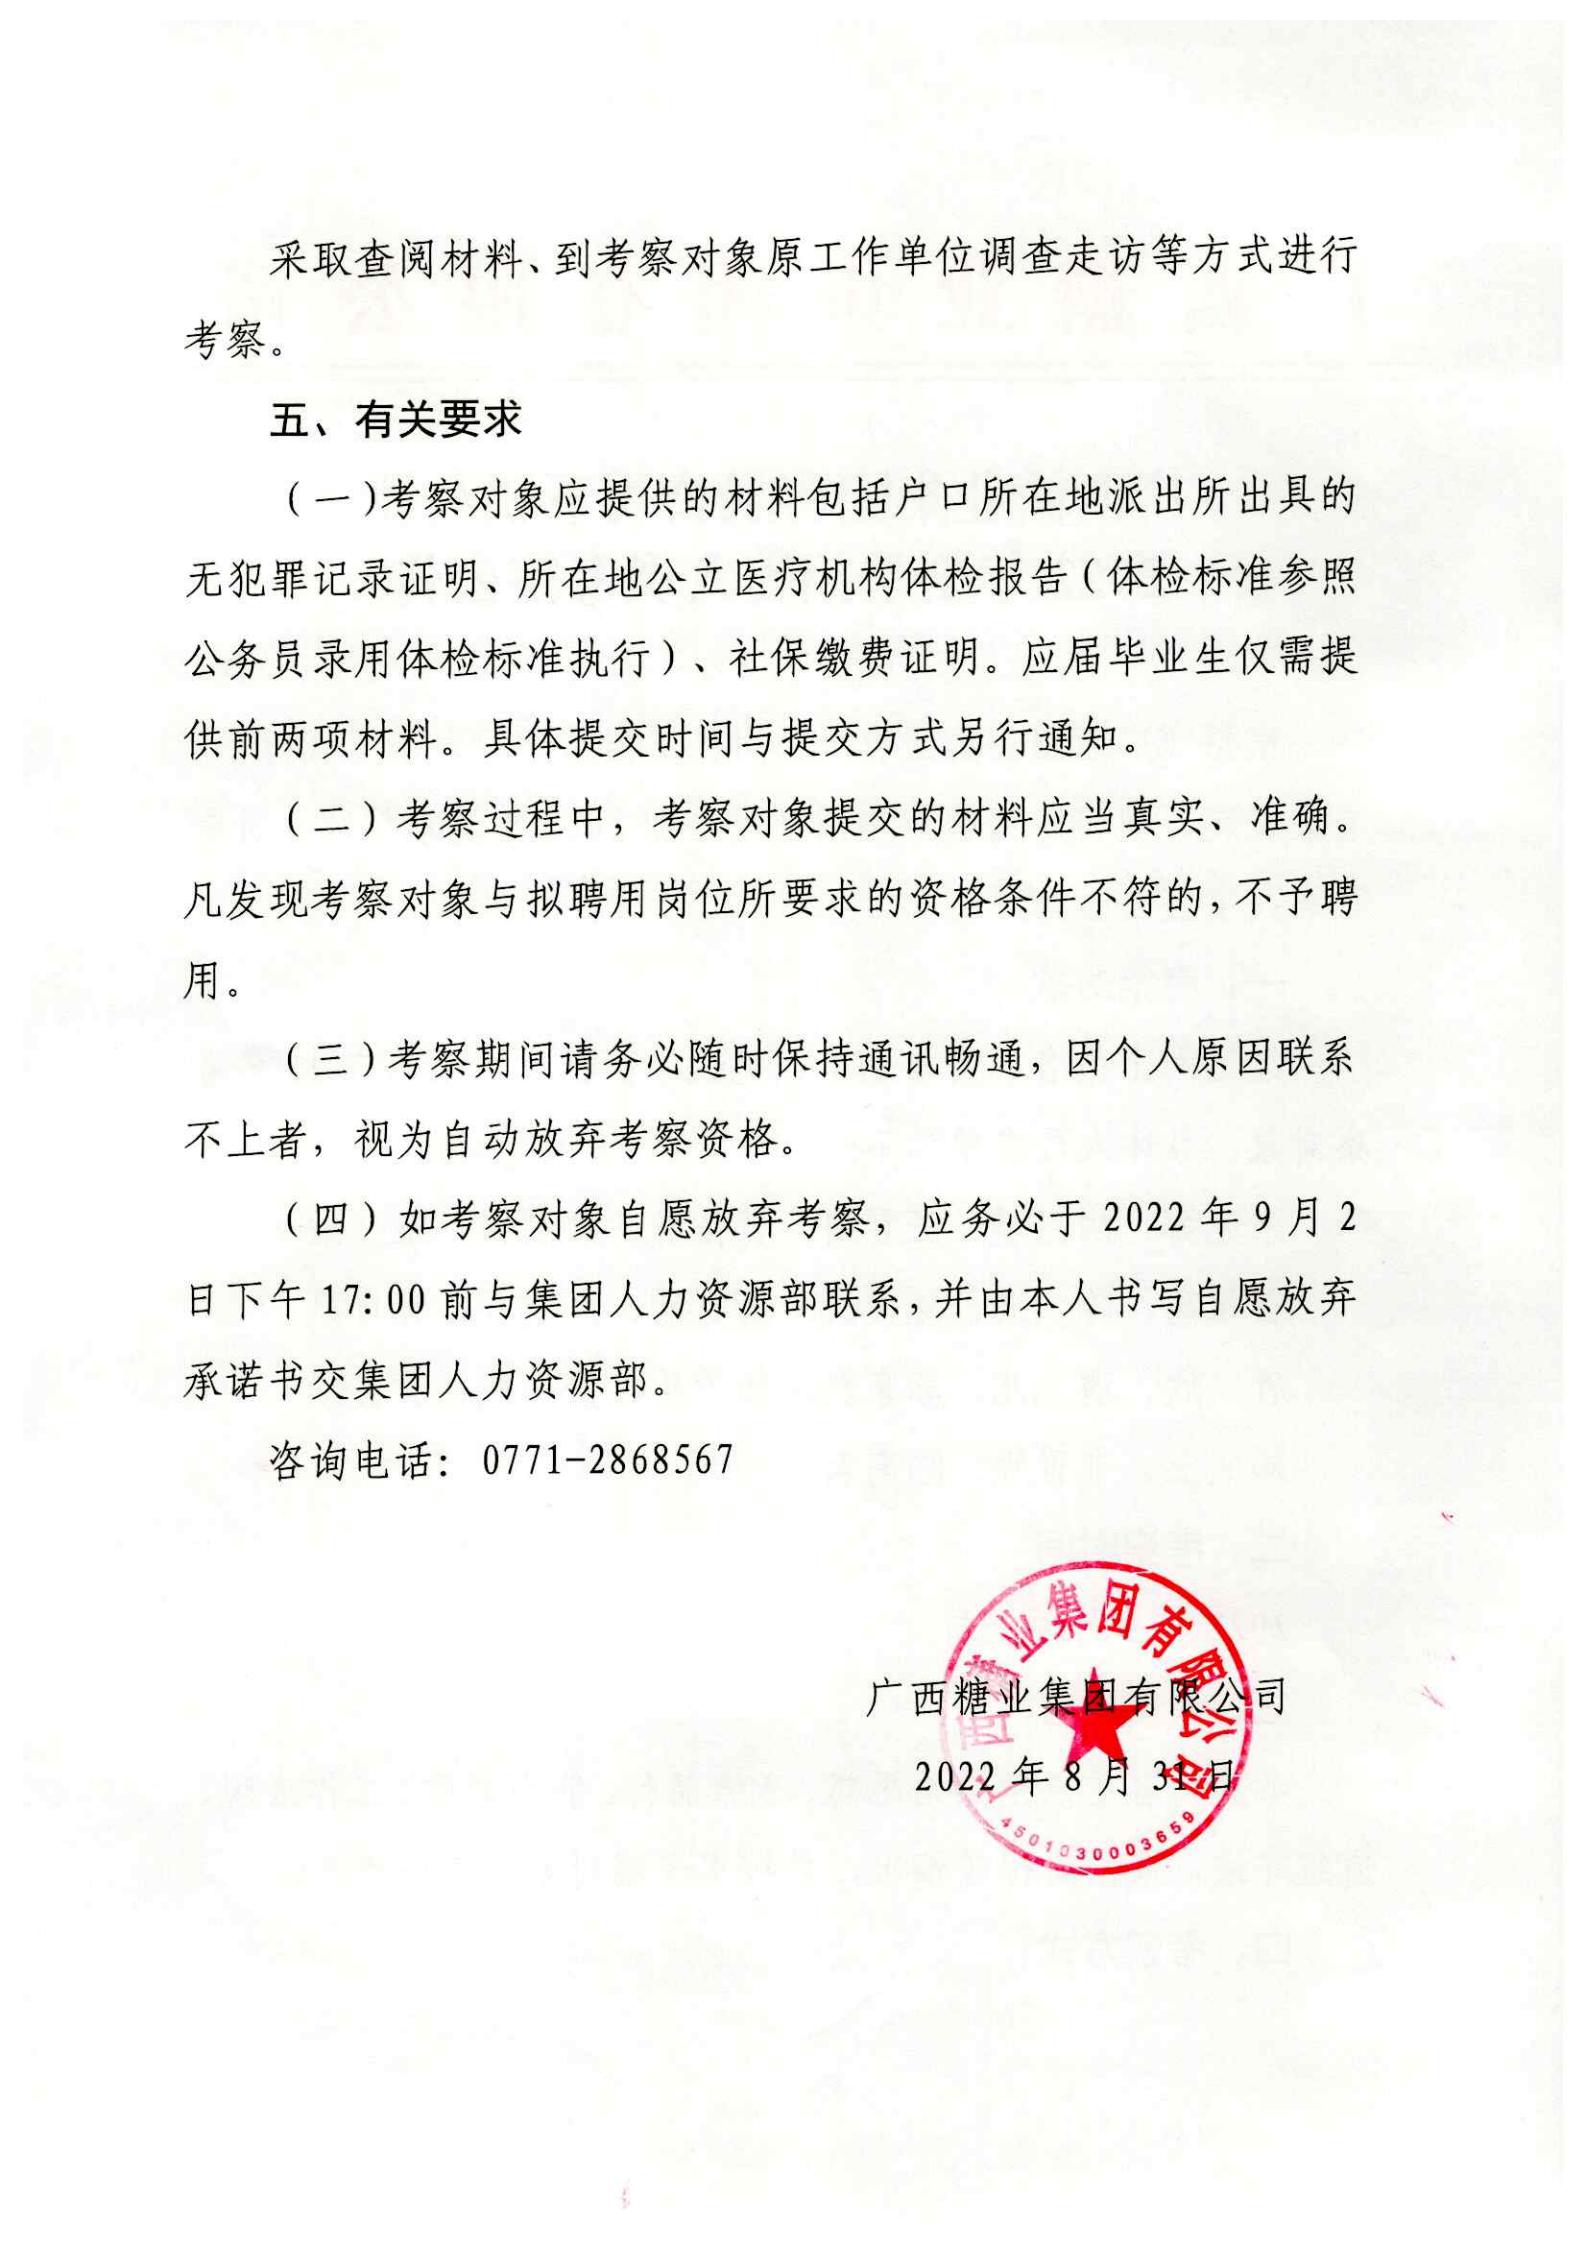 广西糖业集团有限公司下属企业2022年夏季招聘人员考察公告_01.jpg